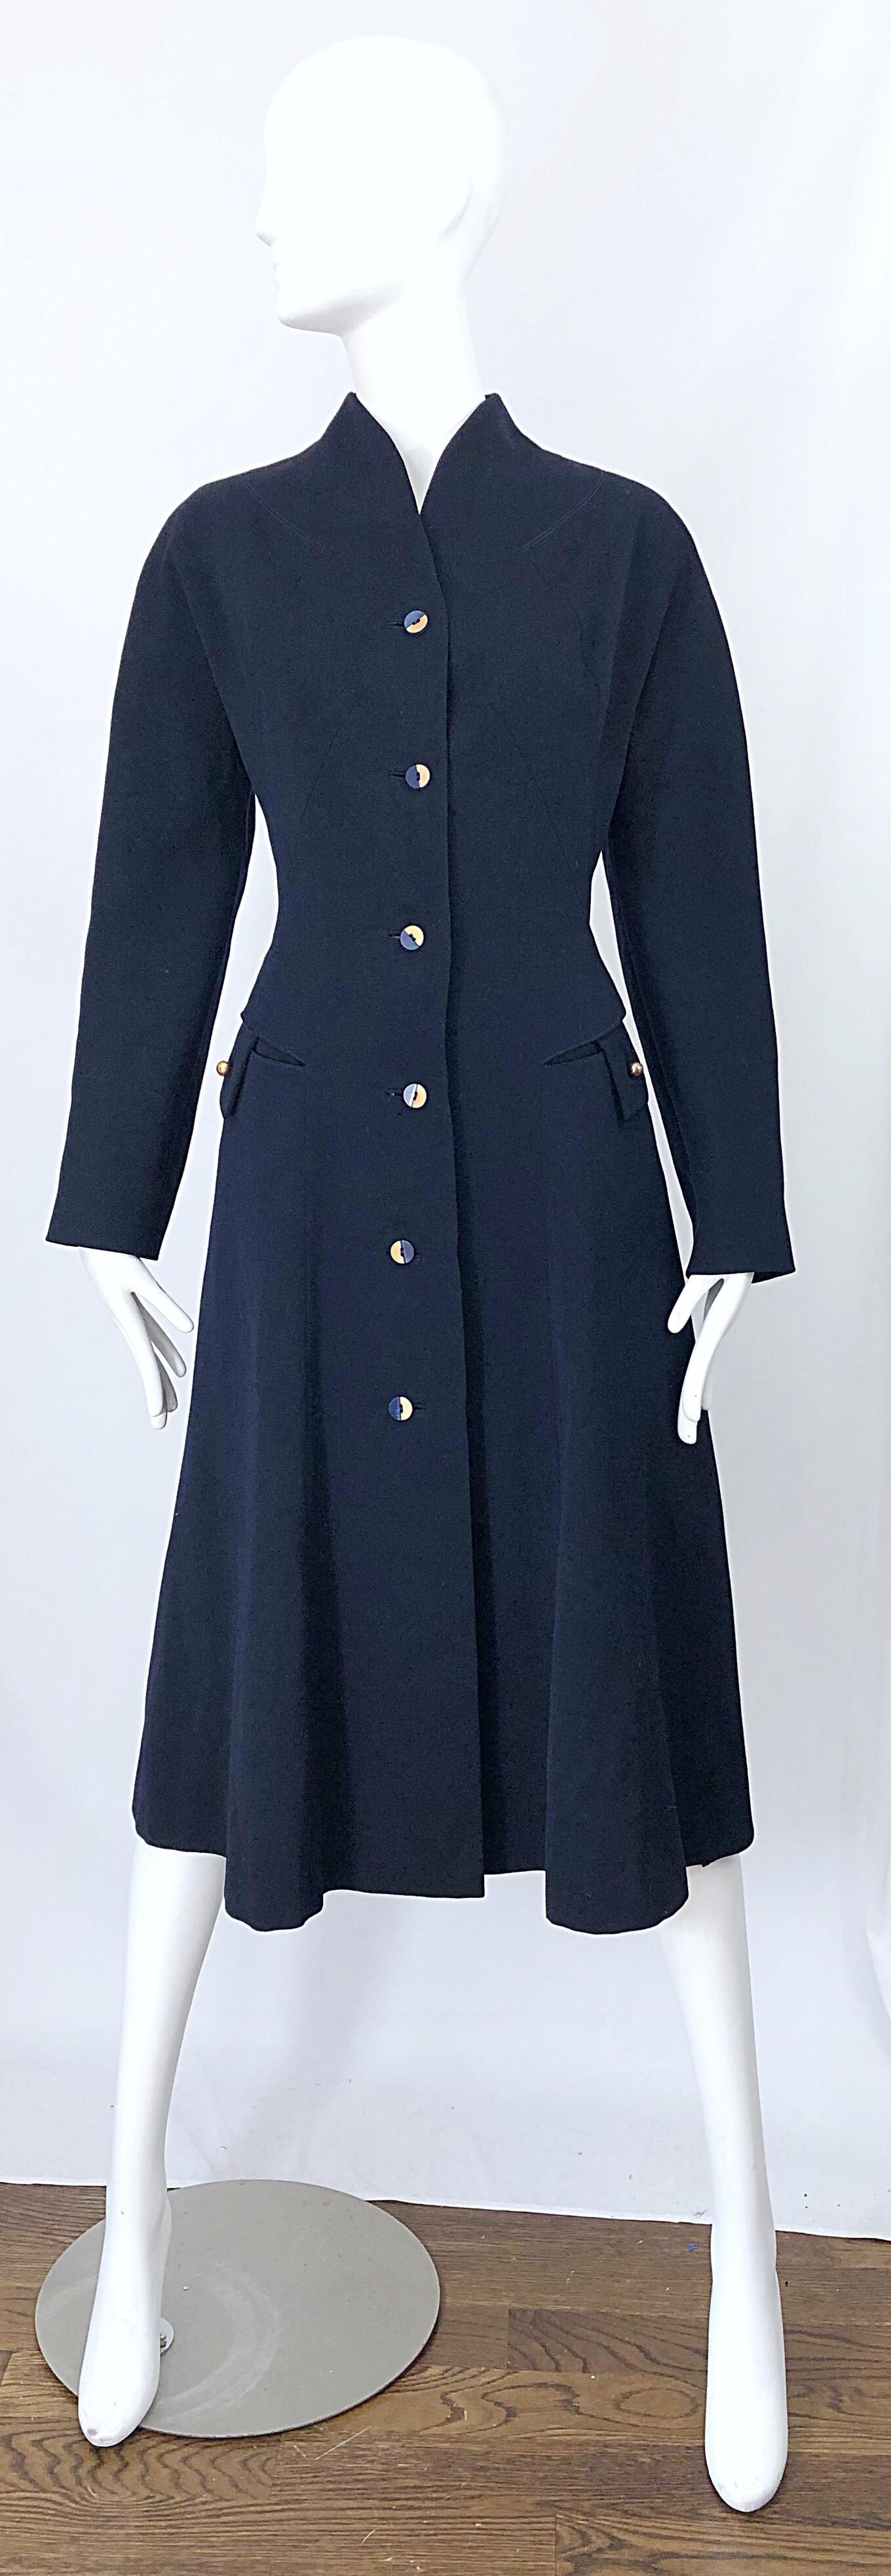 1940s Navy Blue Sleek Deco Style Vintage 40s Princess Jacket Coat 